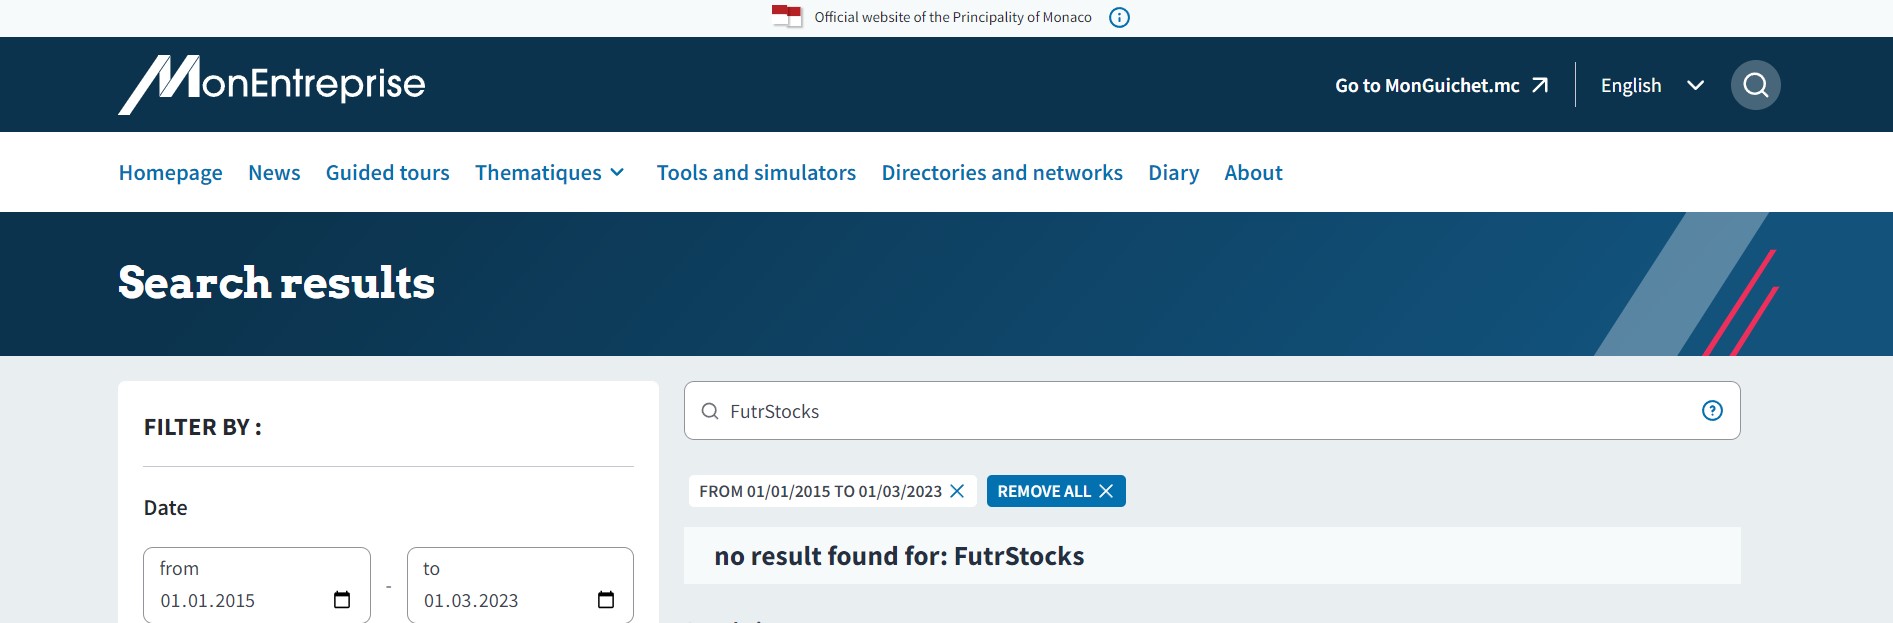 FutrStocks: проверка данных и документов лжеброкера, разоблачение мошеннической схемы